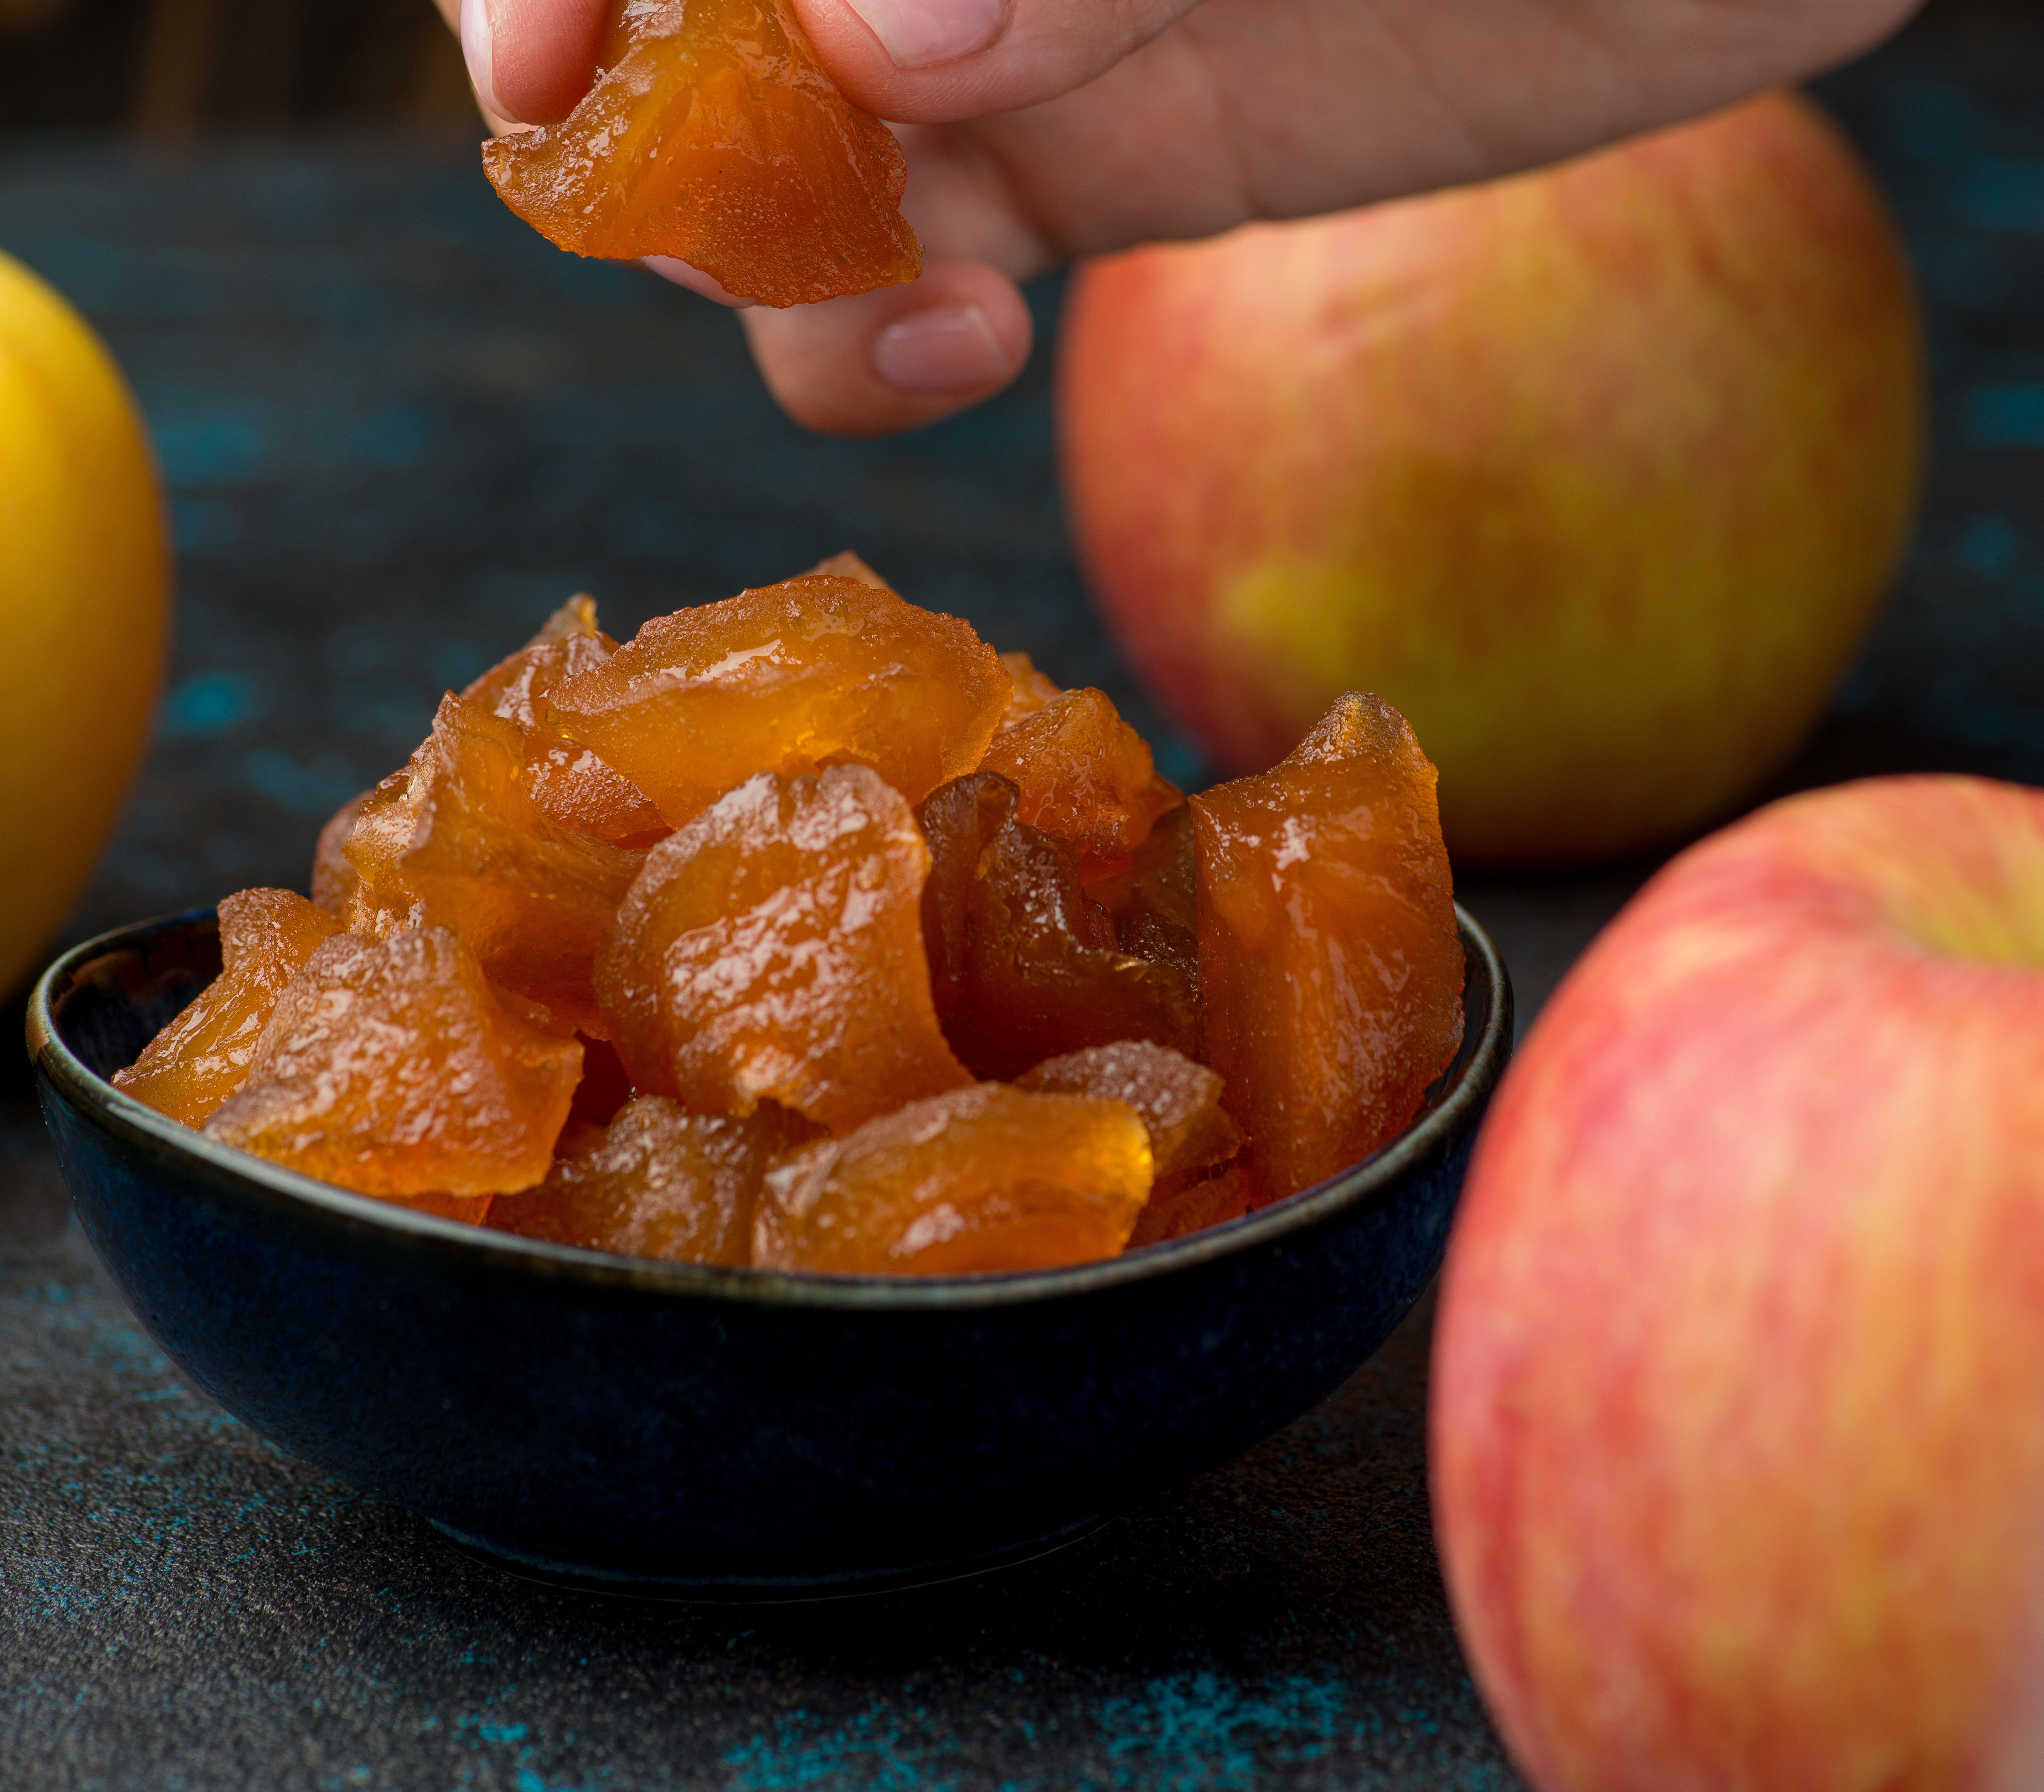 Цукаты из яблок в домашних условиях: рецепты яблочных сладостей в сушилке, мультиварке, духовке, дегидраторе